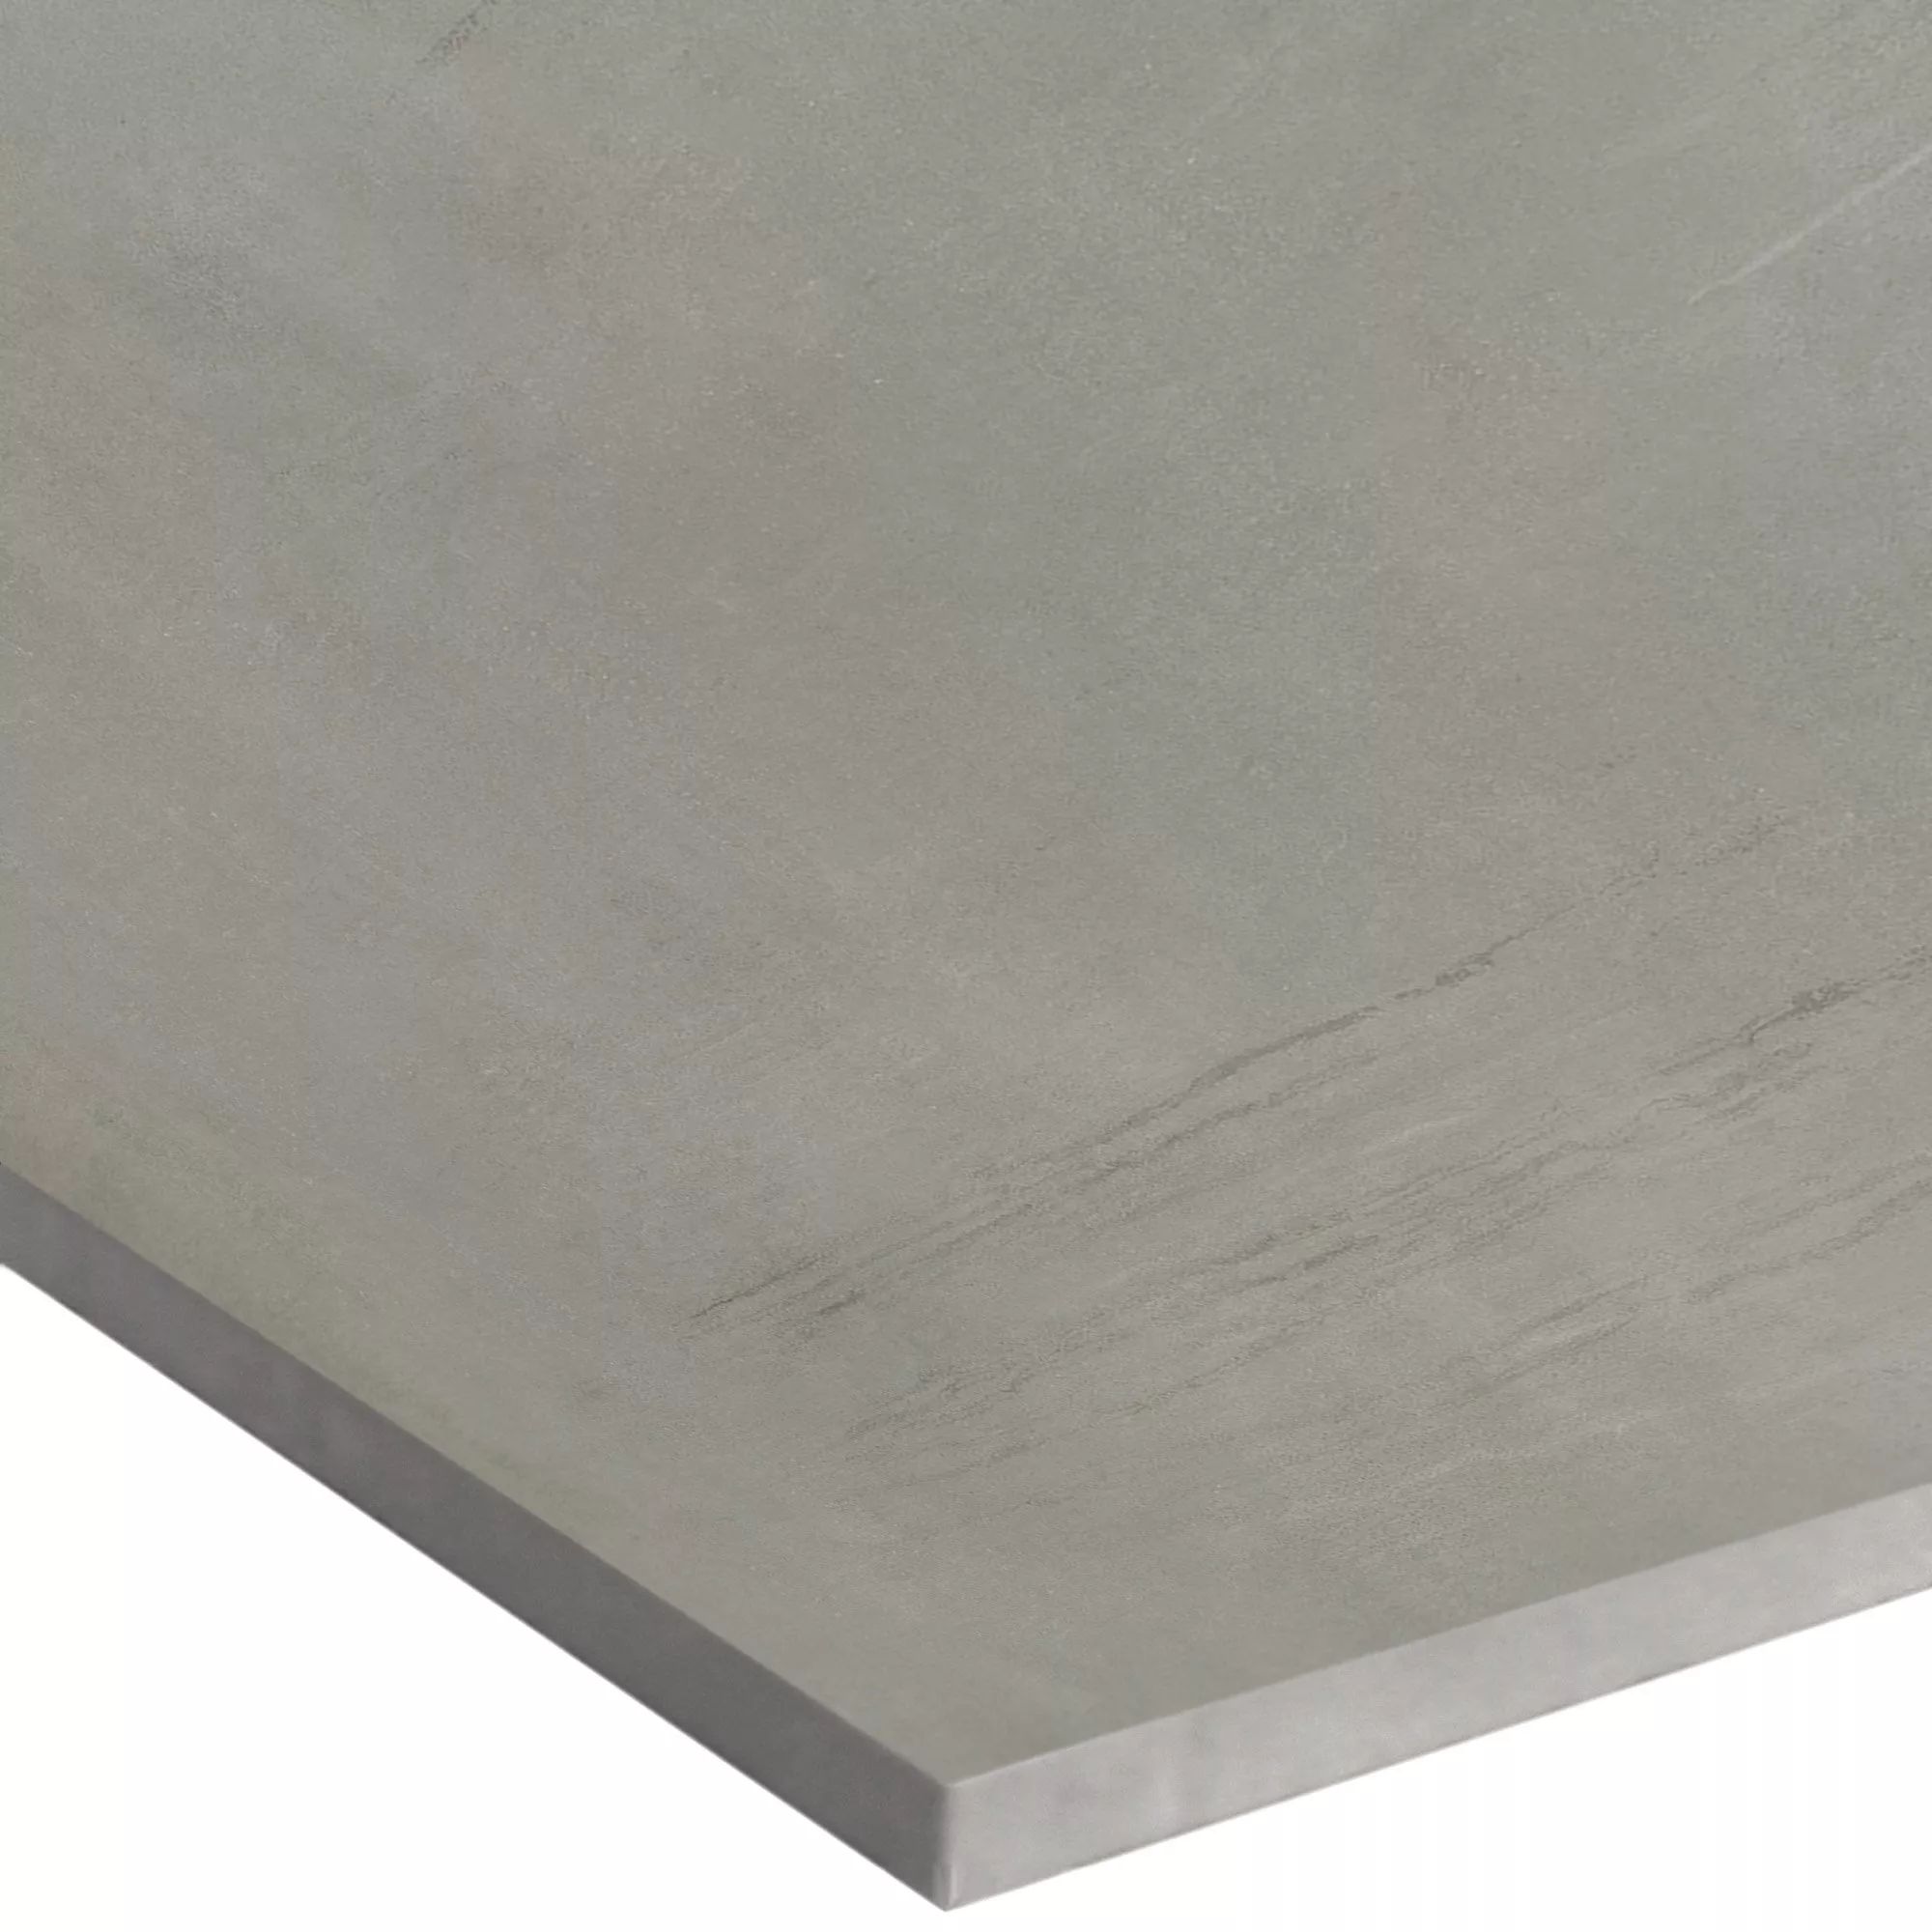 Próbka Płytki Podłogowe Tycoon O Wyglądzie Betonu R10 Platinum 60x60cm